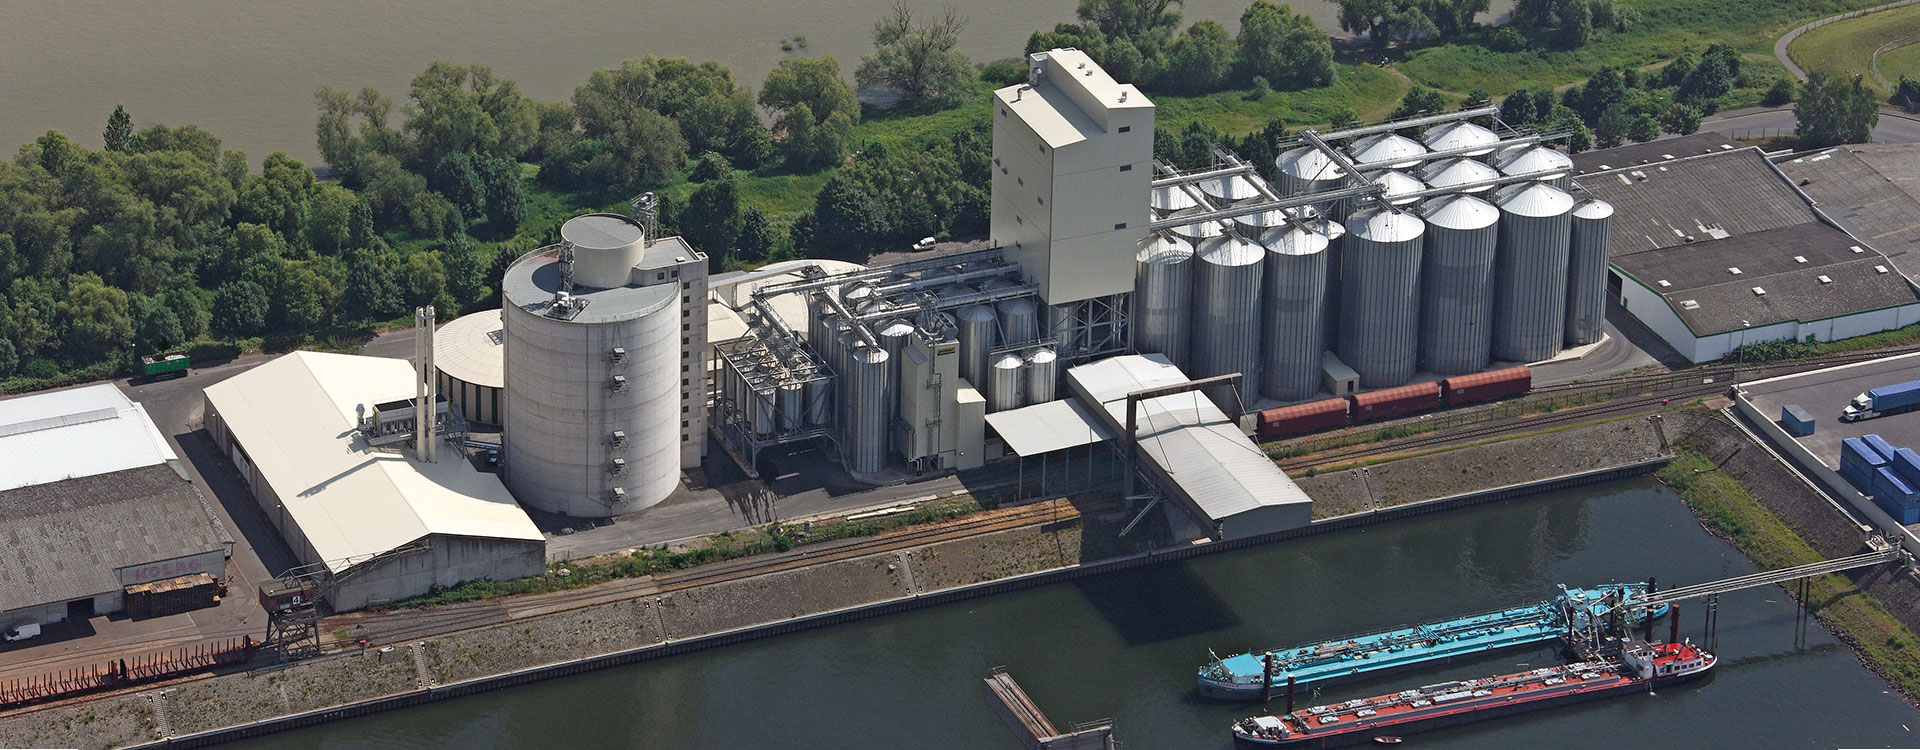 Koblenz plant